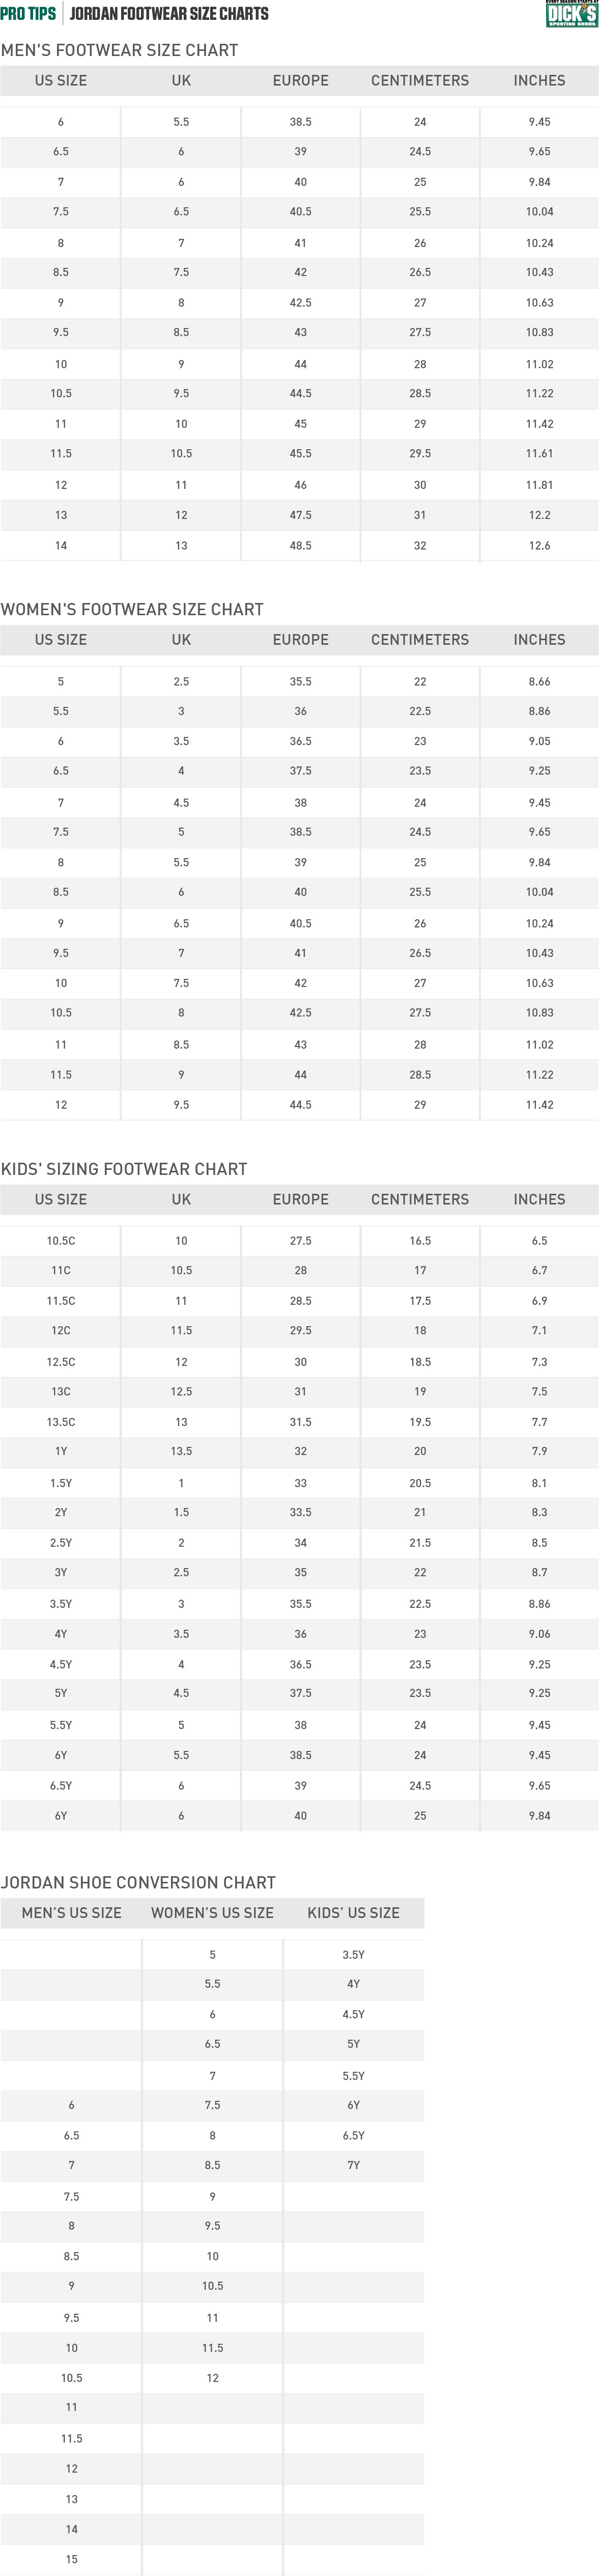 Nike® Jordan Footwear Size Charts | PRO 